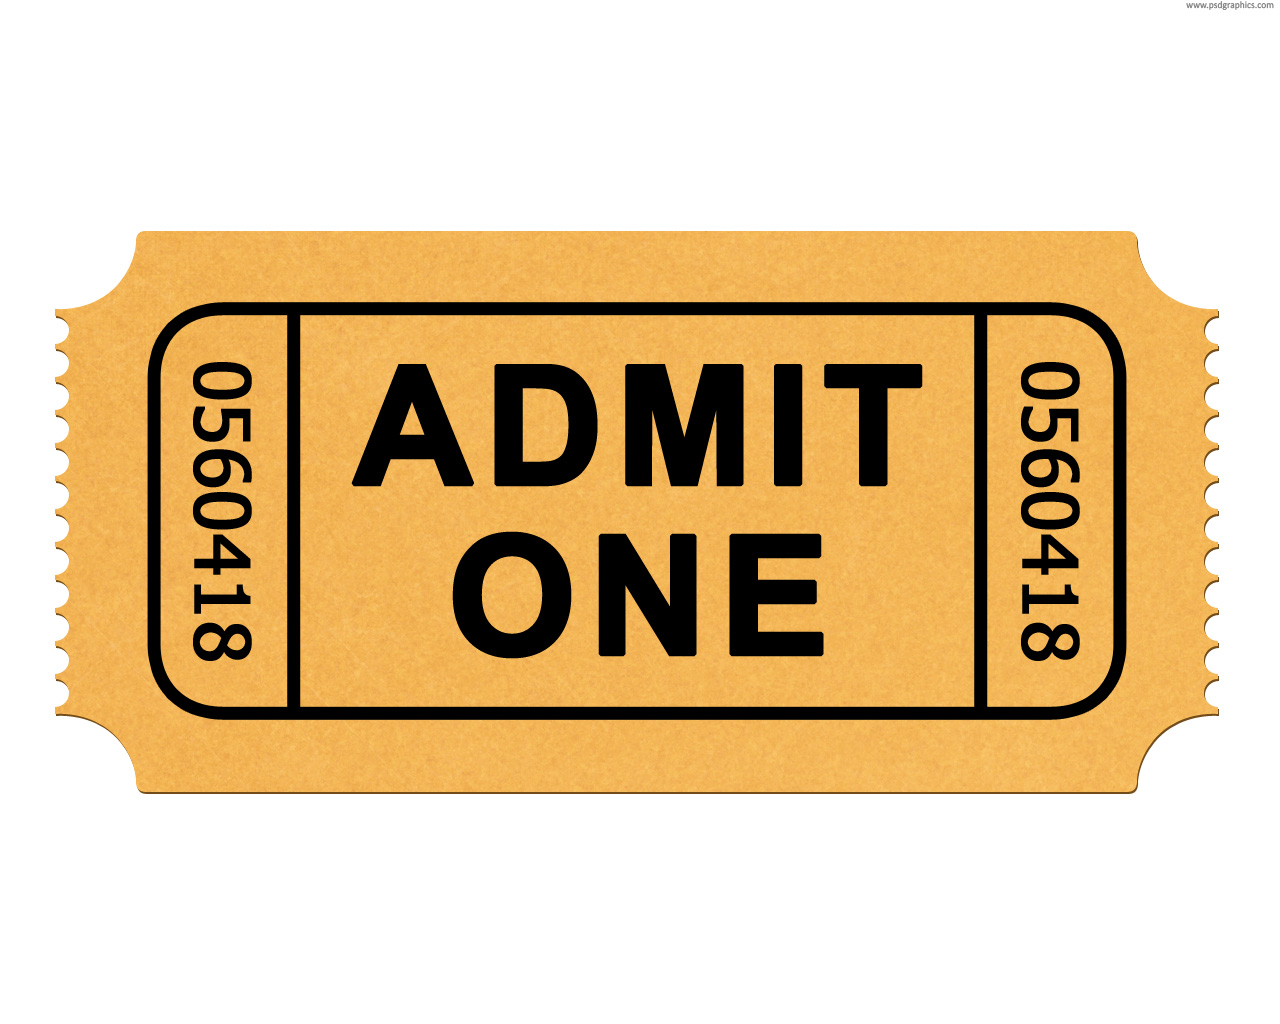 movie-tickets-admit-one